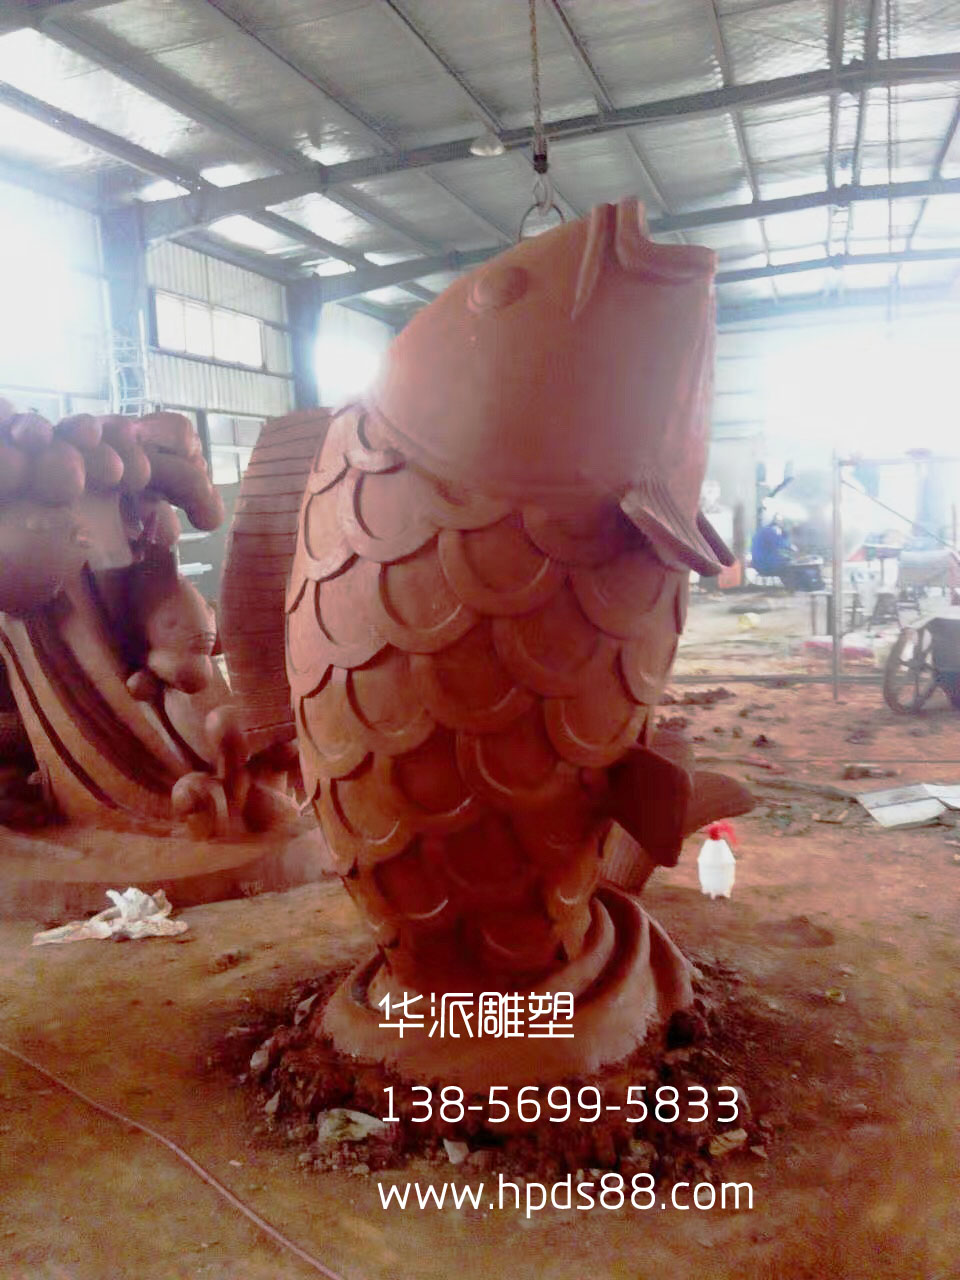 安徽华派雕塑公司